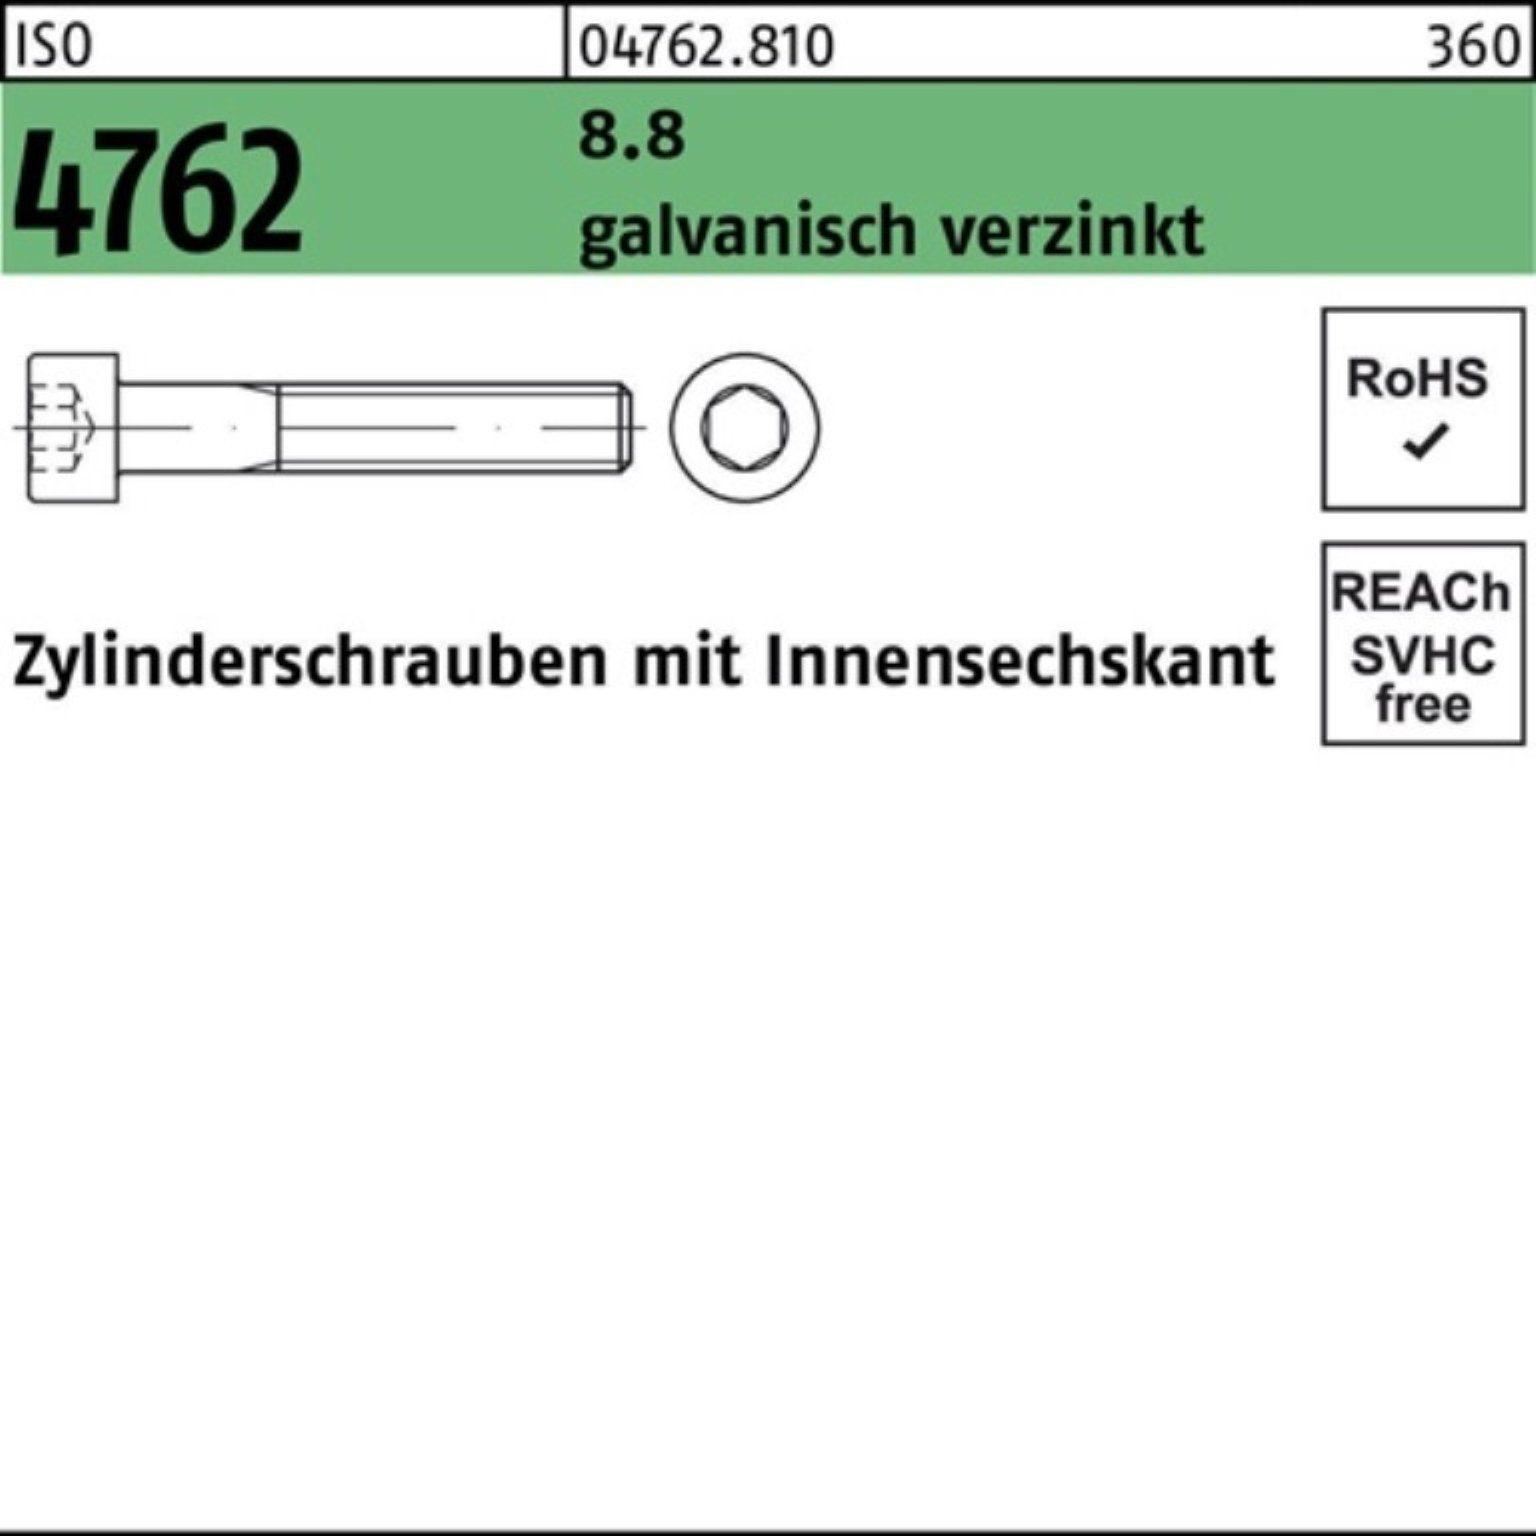 Reyher Zylinderschraube 100er Pack Zylinderschraube 1 8.8 ISO galv.verz. Innen-6kt 4762 M42x70